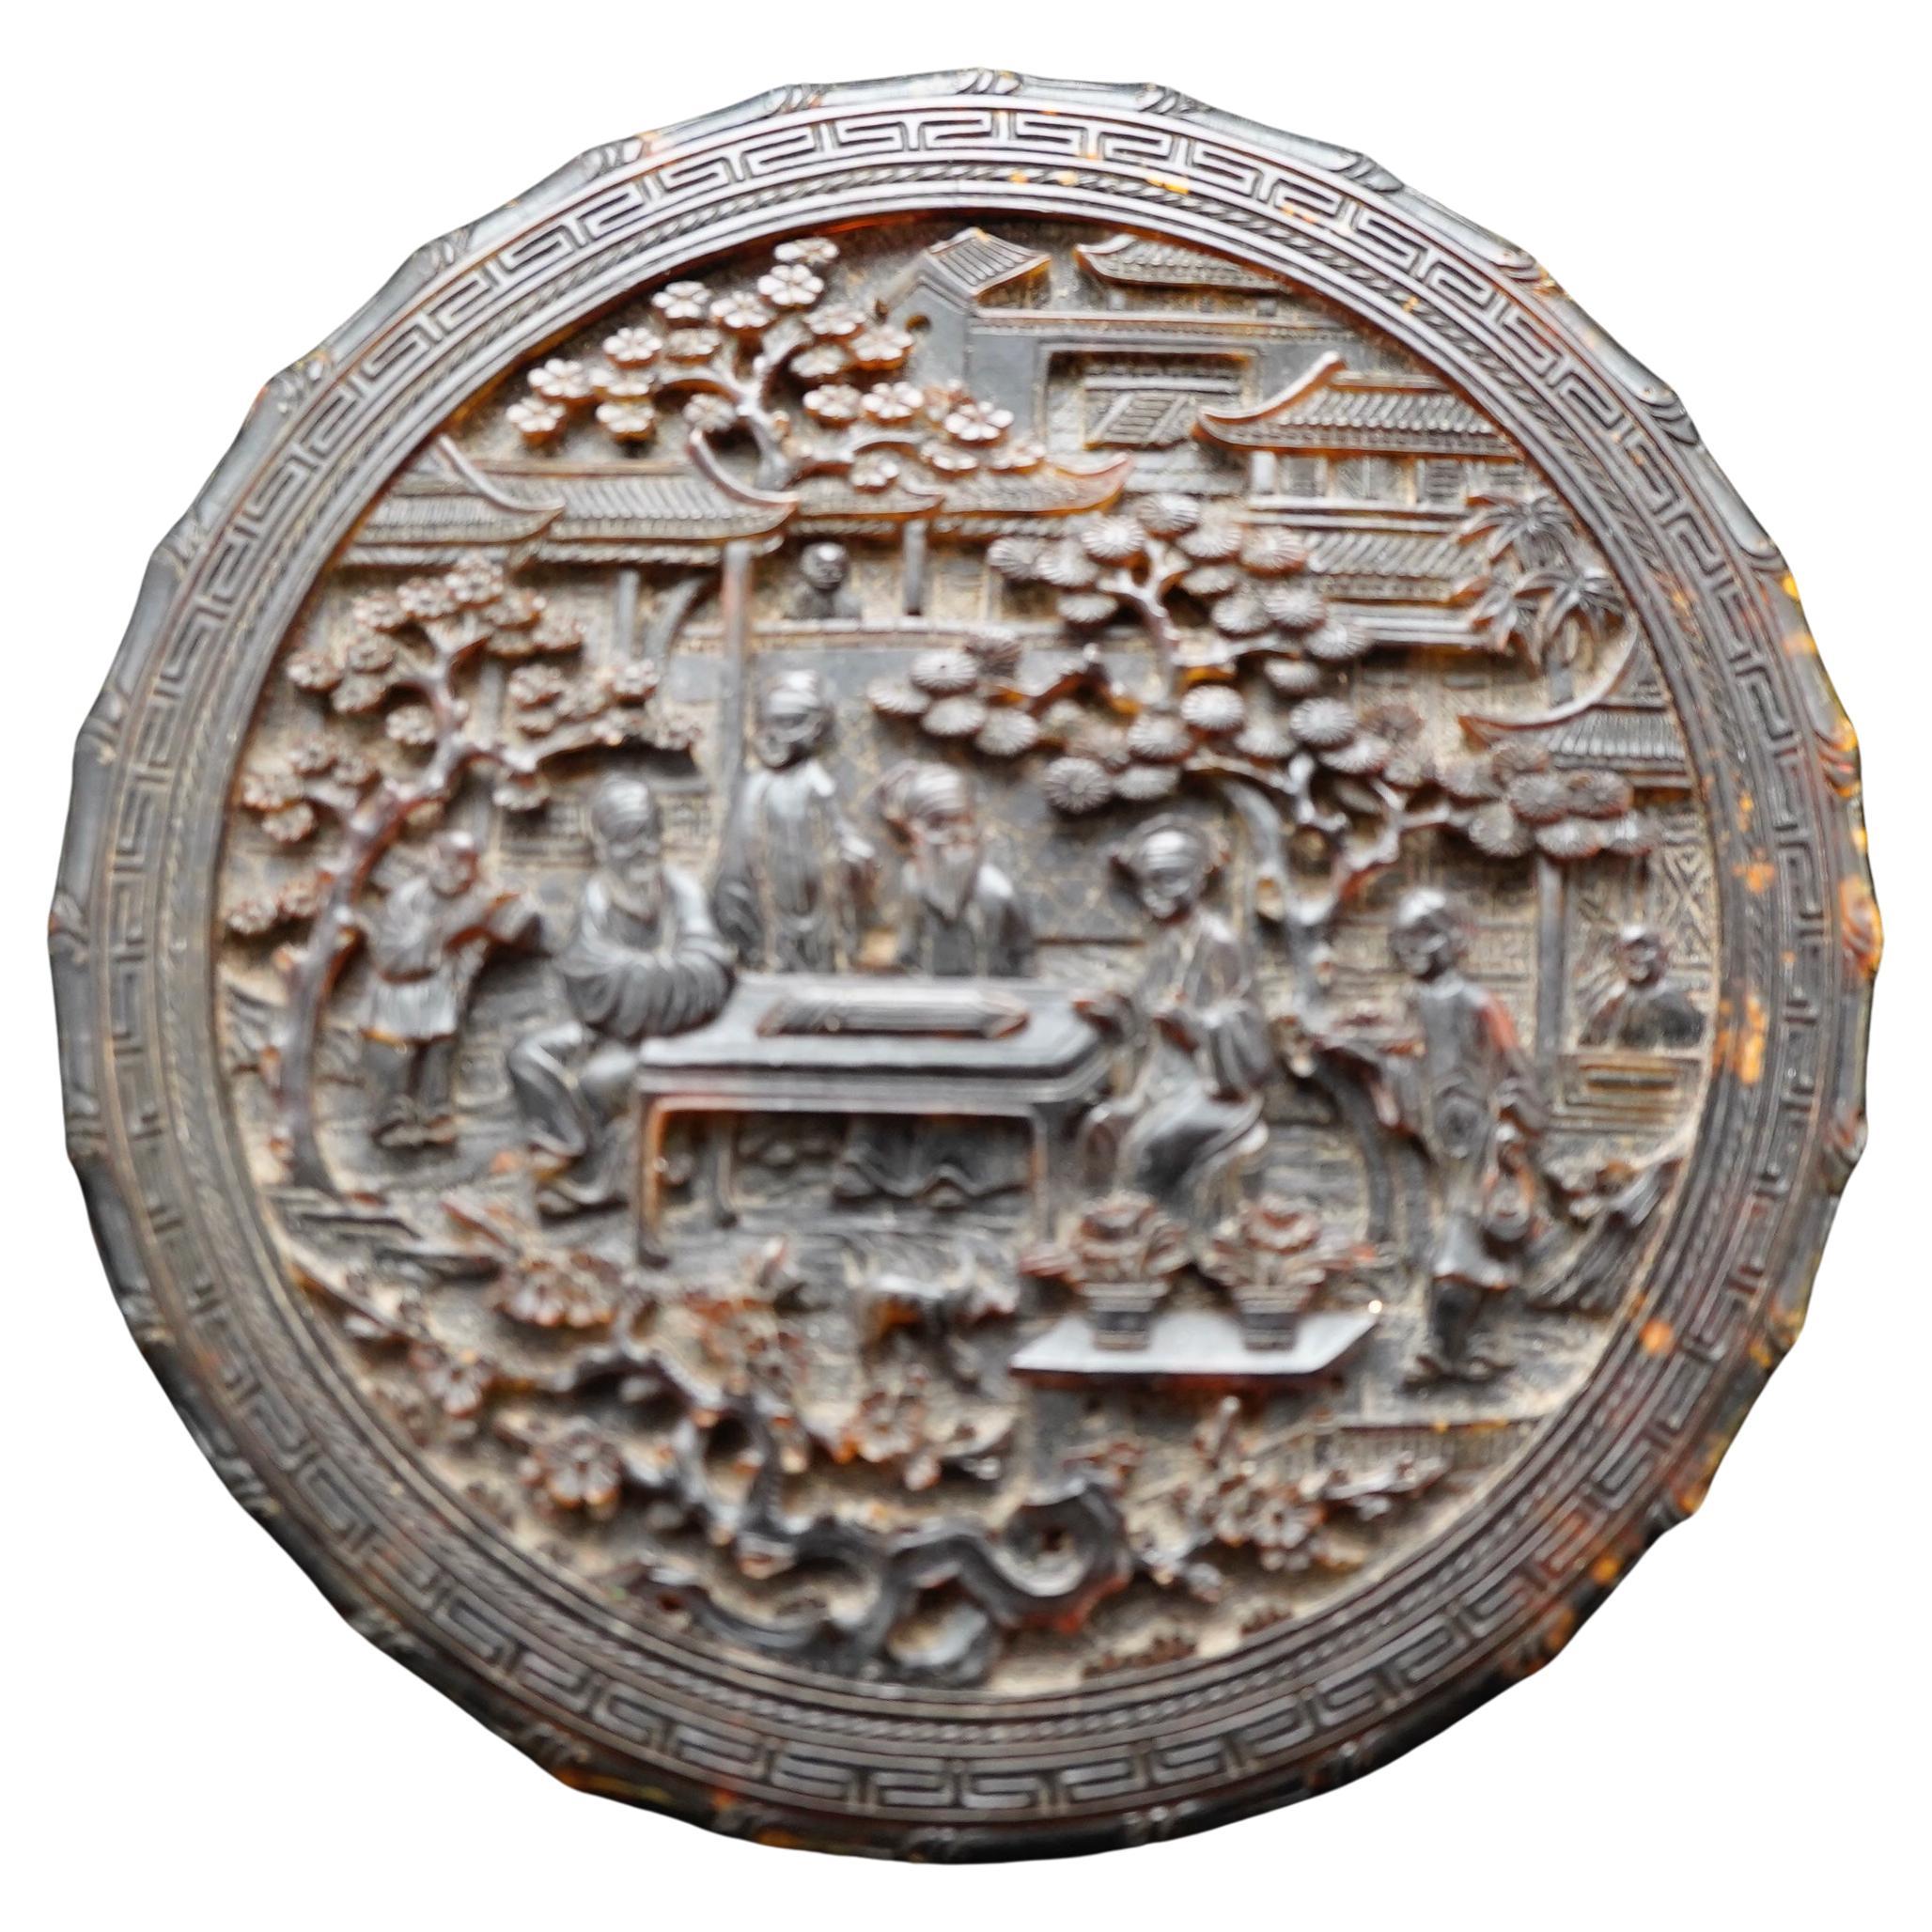 Fein geschnitzte chinesische Schildpatt-Schachtel, Kanton 1840